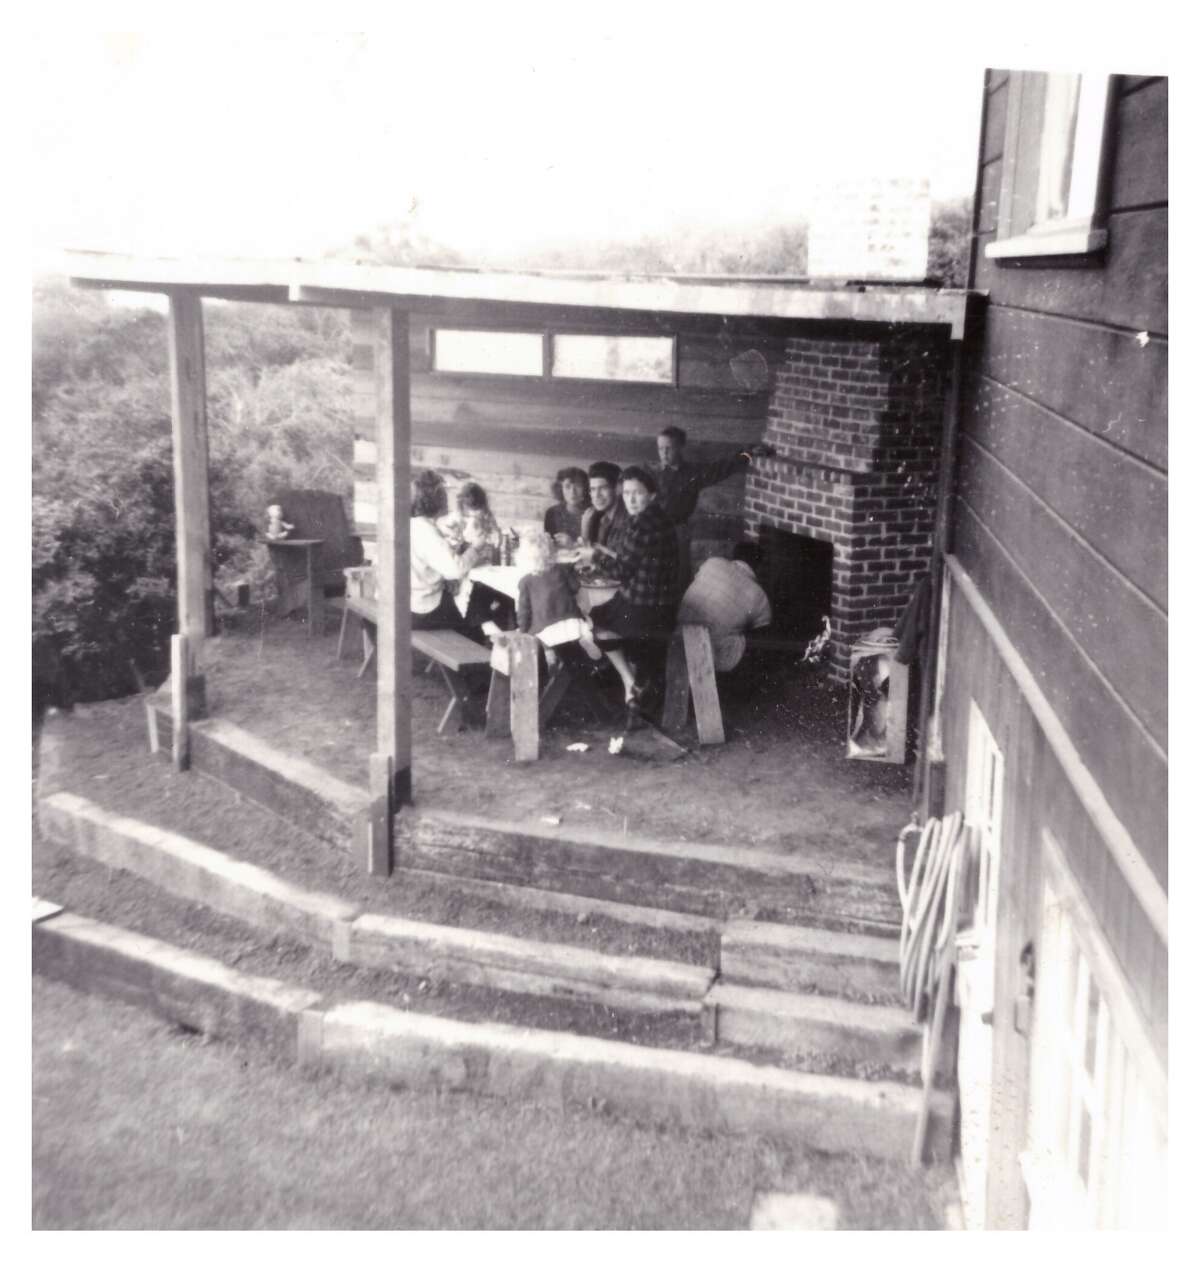 Aquí hay una foto antigua de la familia disfrutando de la chimenea al aire libre/patio cubierto. 